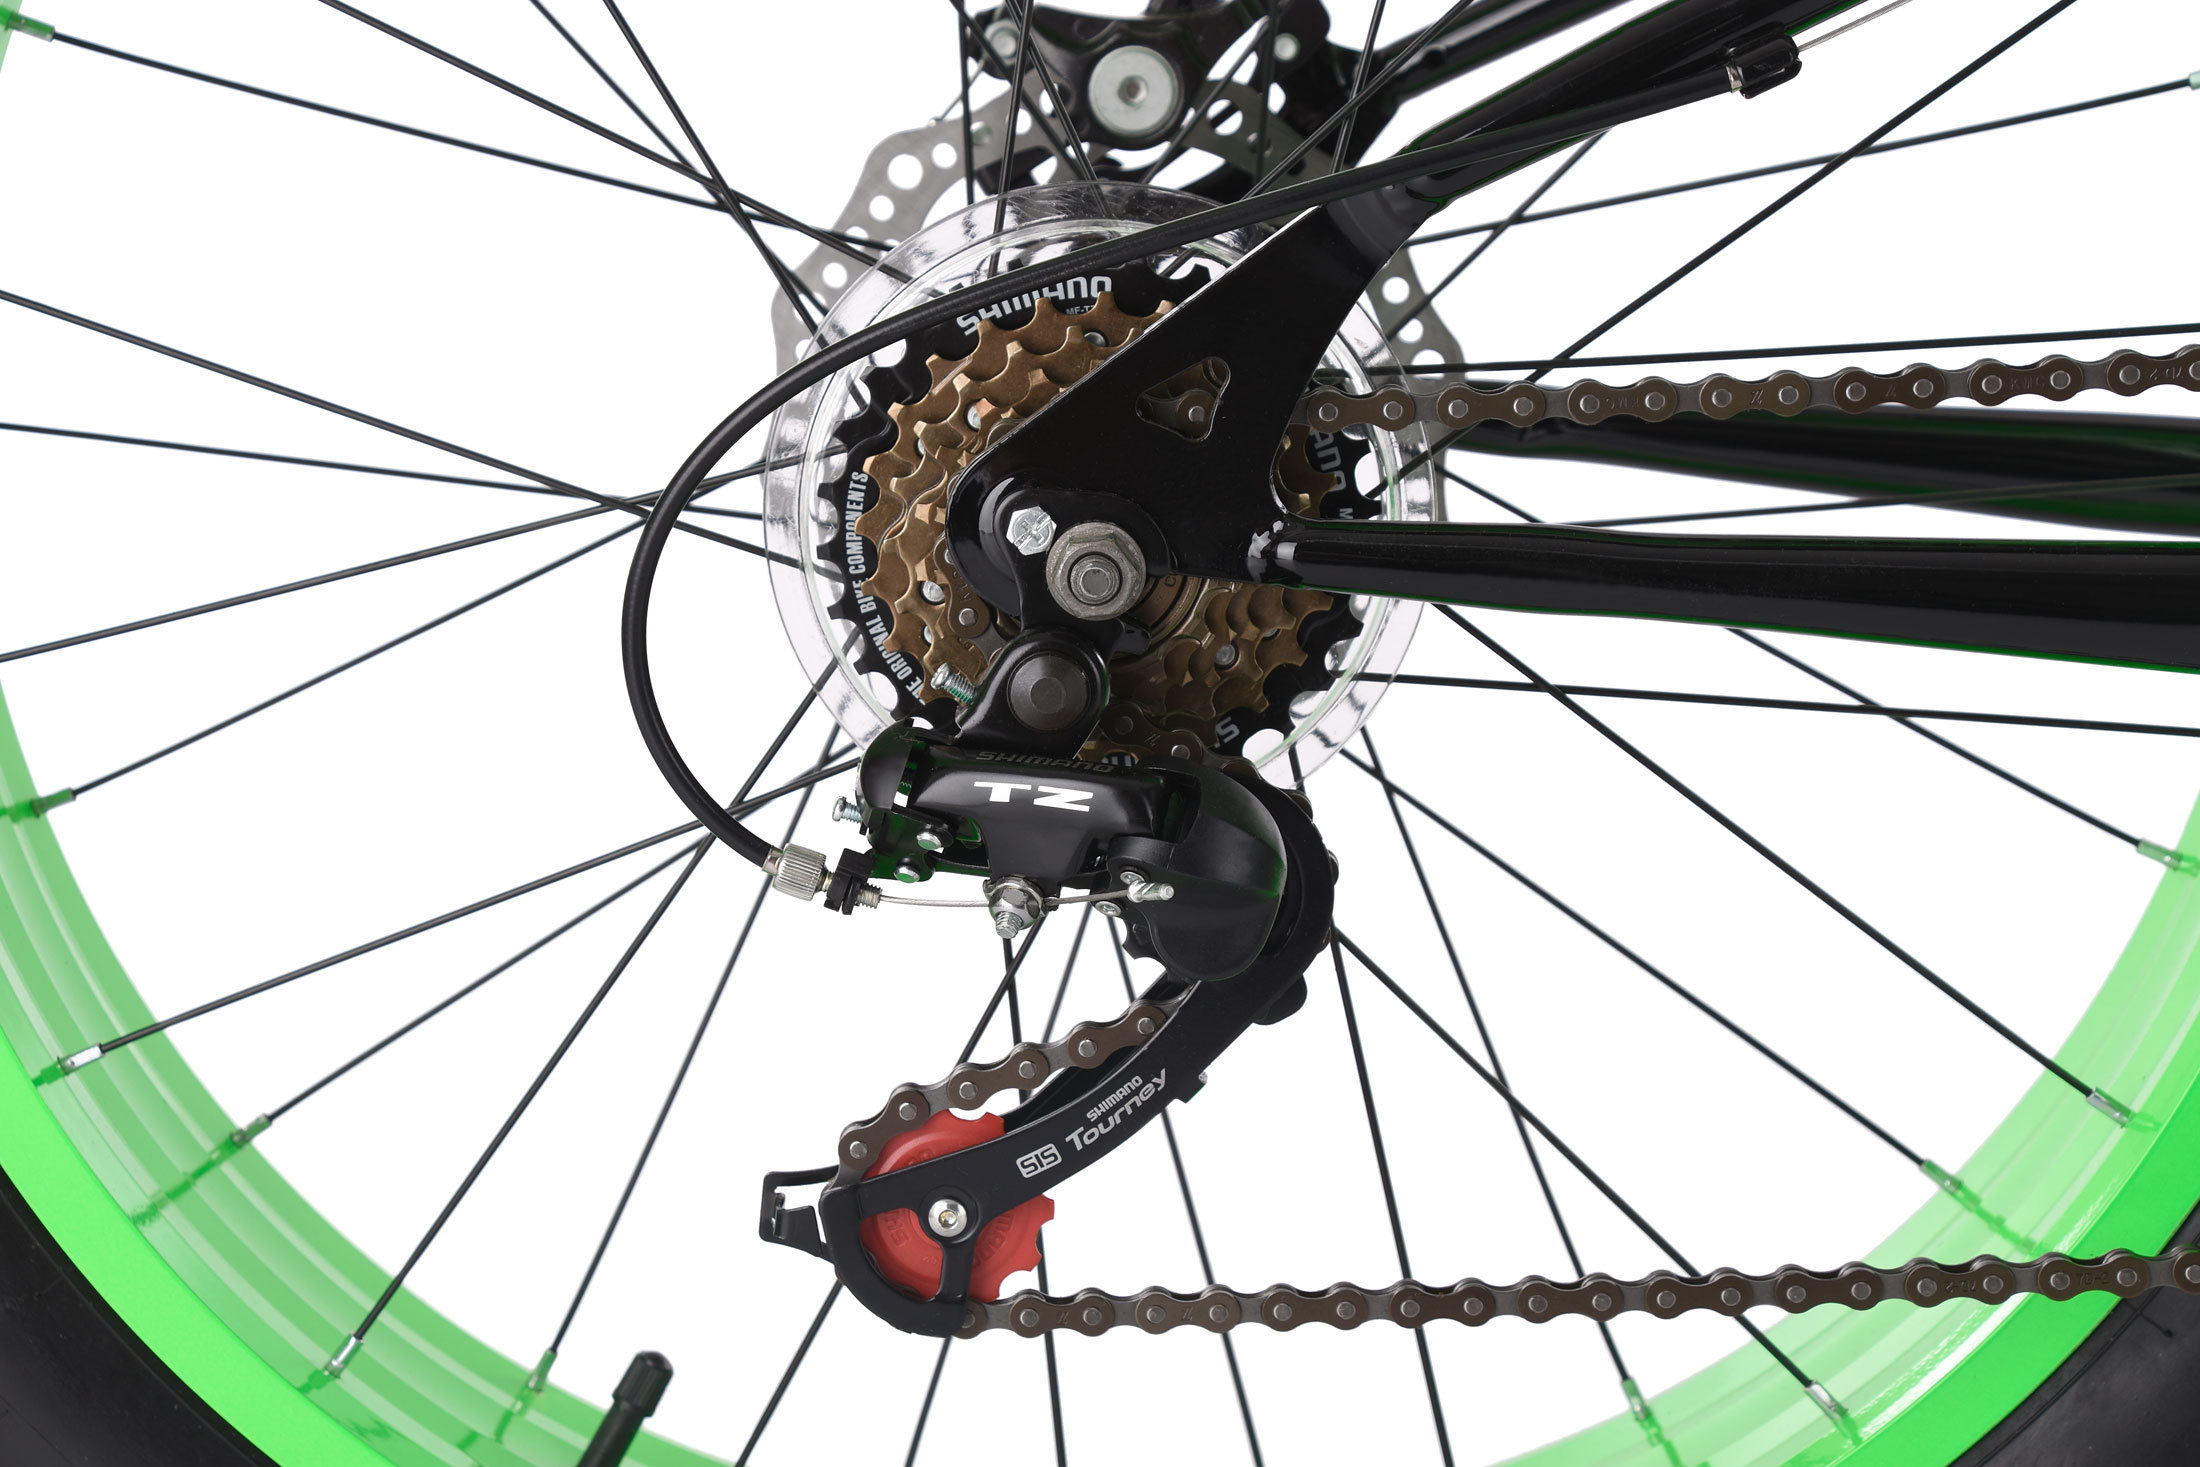 Fatbike 24'' Mountain Bike Kinder SNW2458 schwarz-grün RH 33 cm KS Cycling 238M 